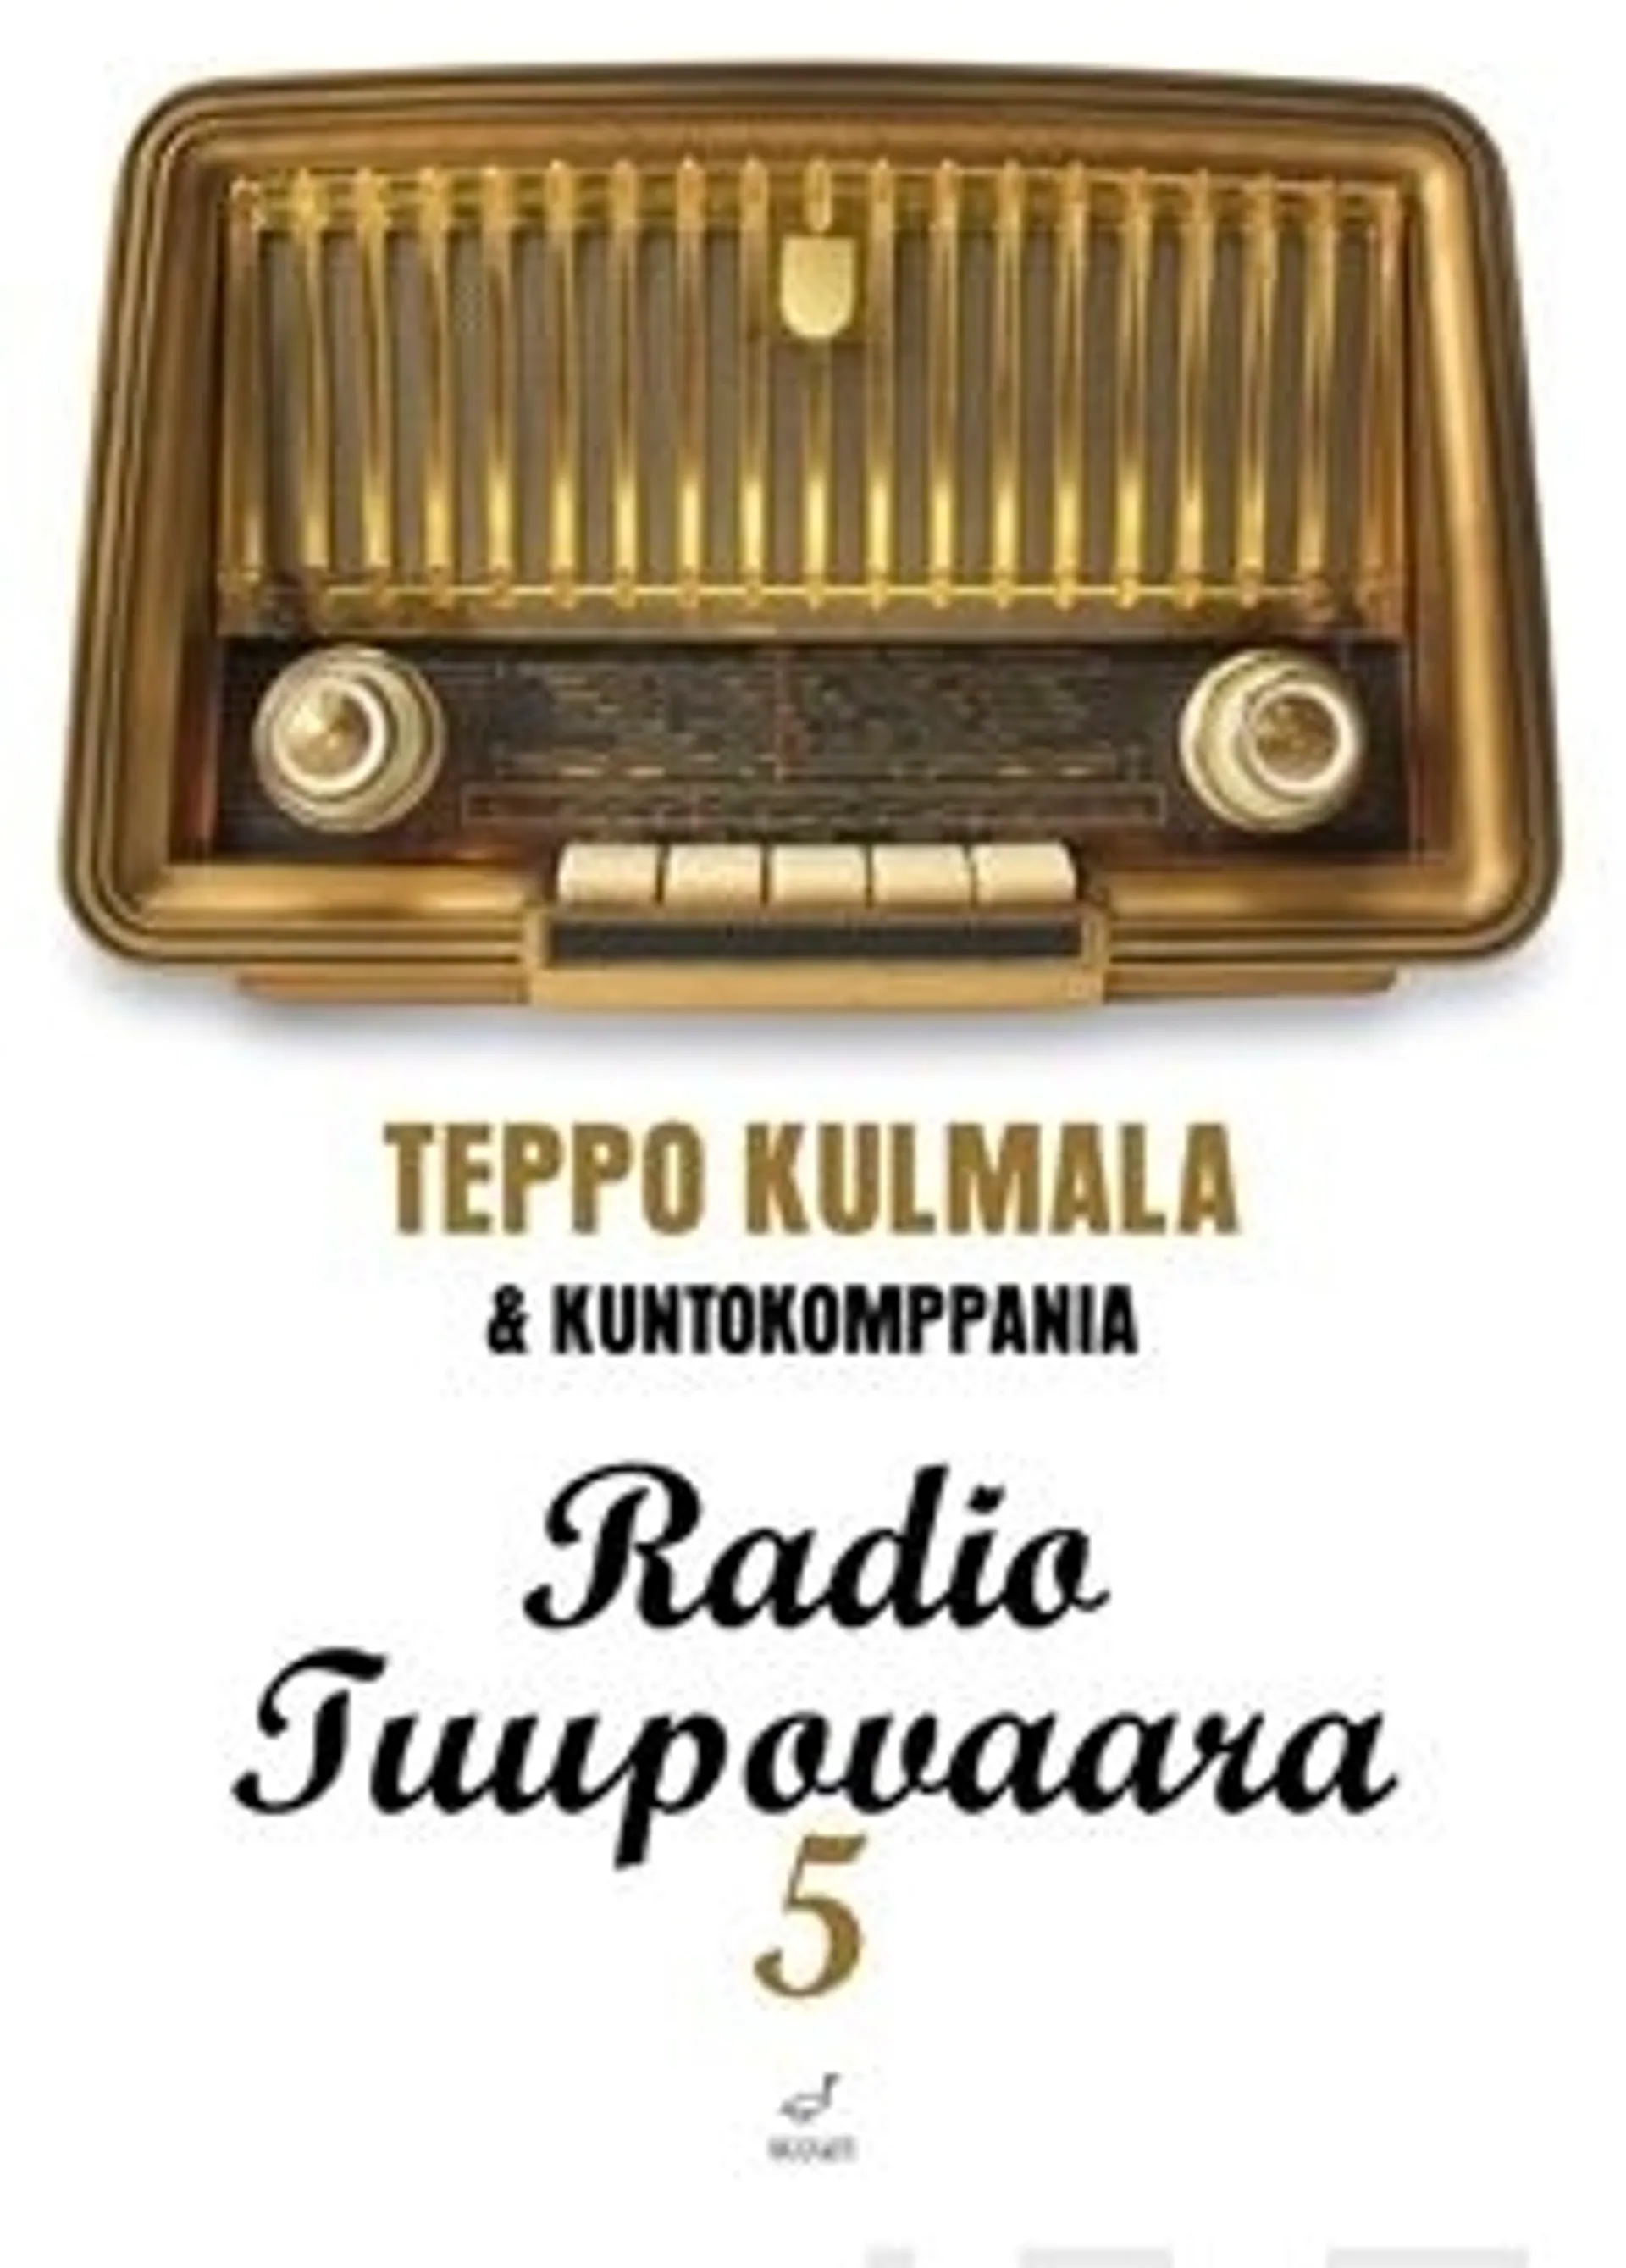 Kulmala, Radio Tuupovaara 5